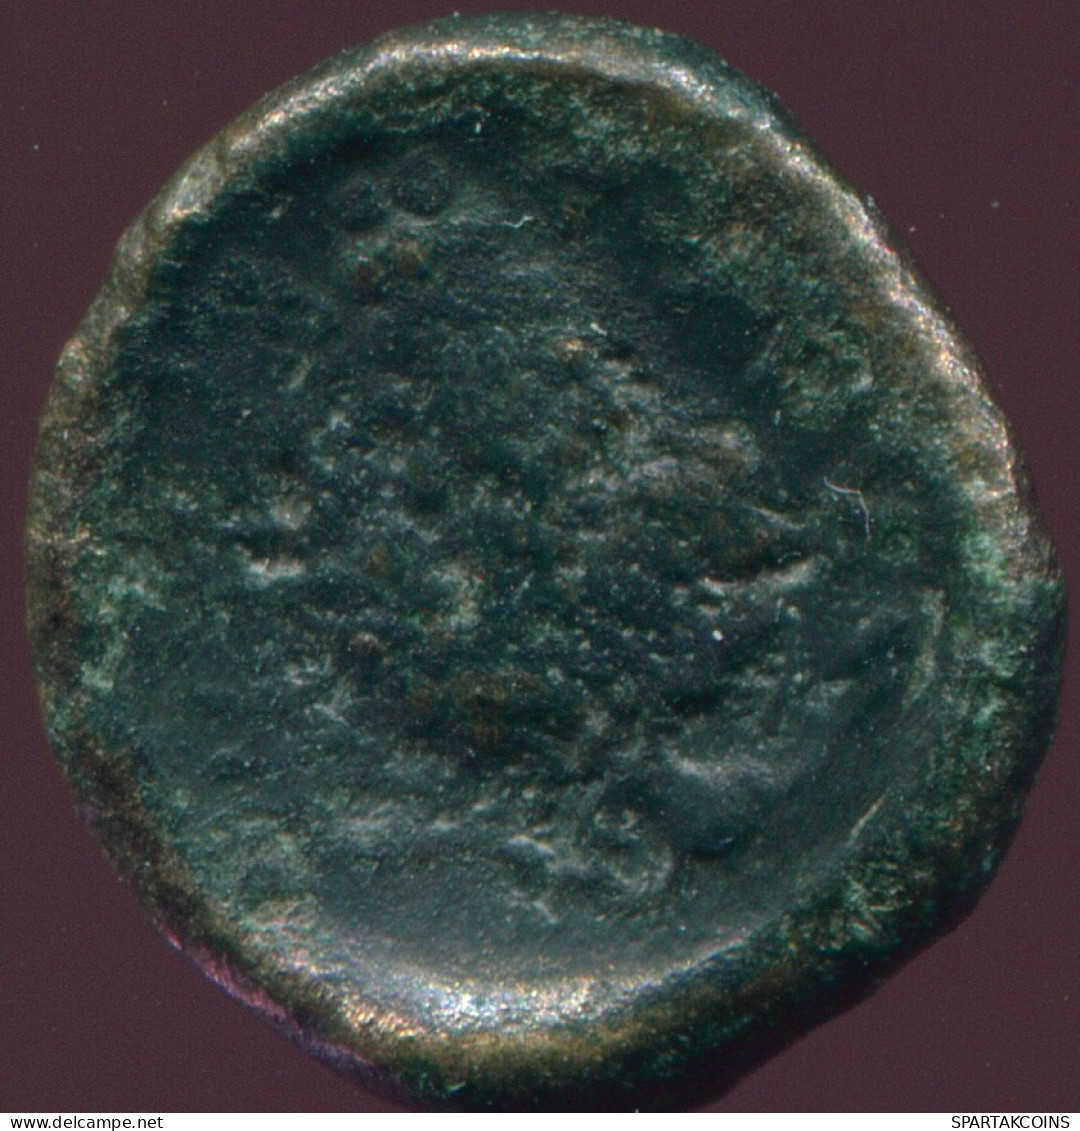 ATHENA Authentic Ancient GRIECHISCHE Münze 1.9g/13.2mm #GRK1366.10.D.A - Griekenland